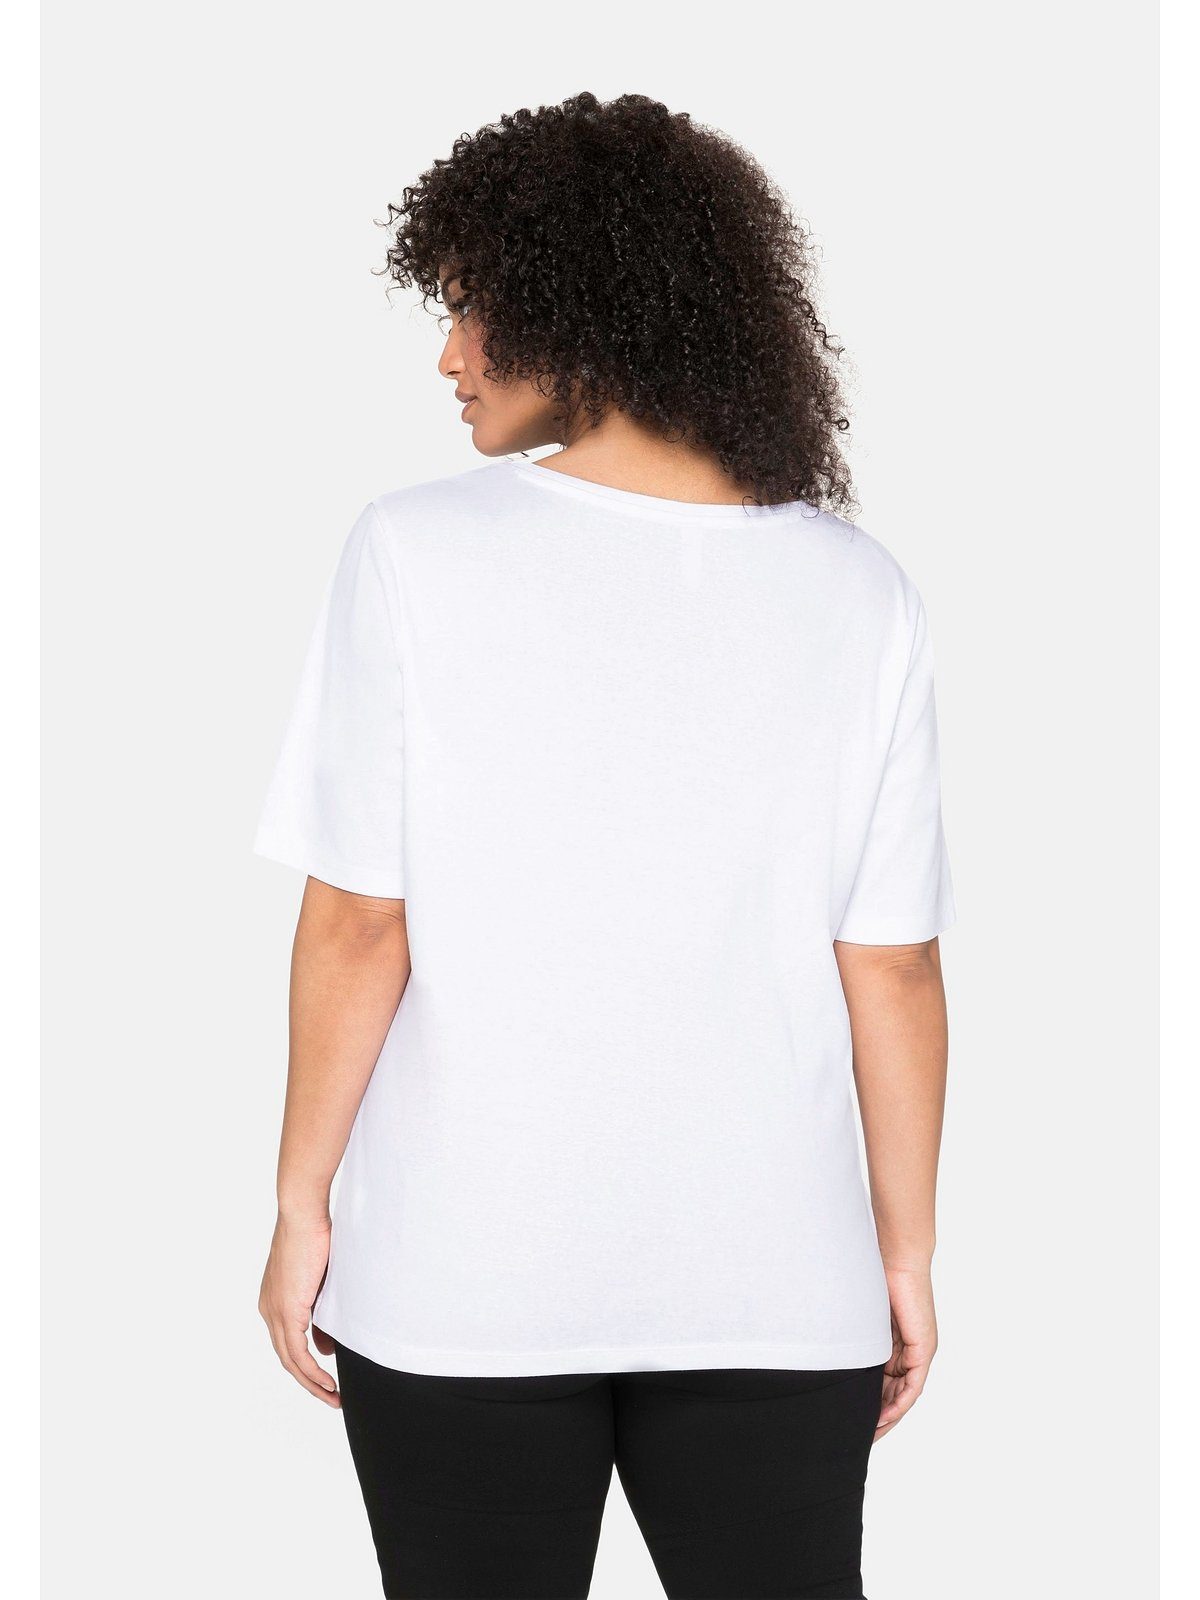 T-Shirt Baumwolle weiß reiner Sheego Größen Große aus